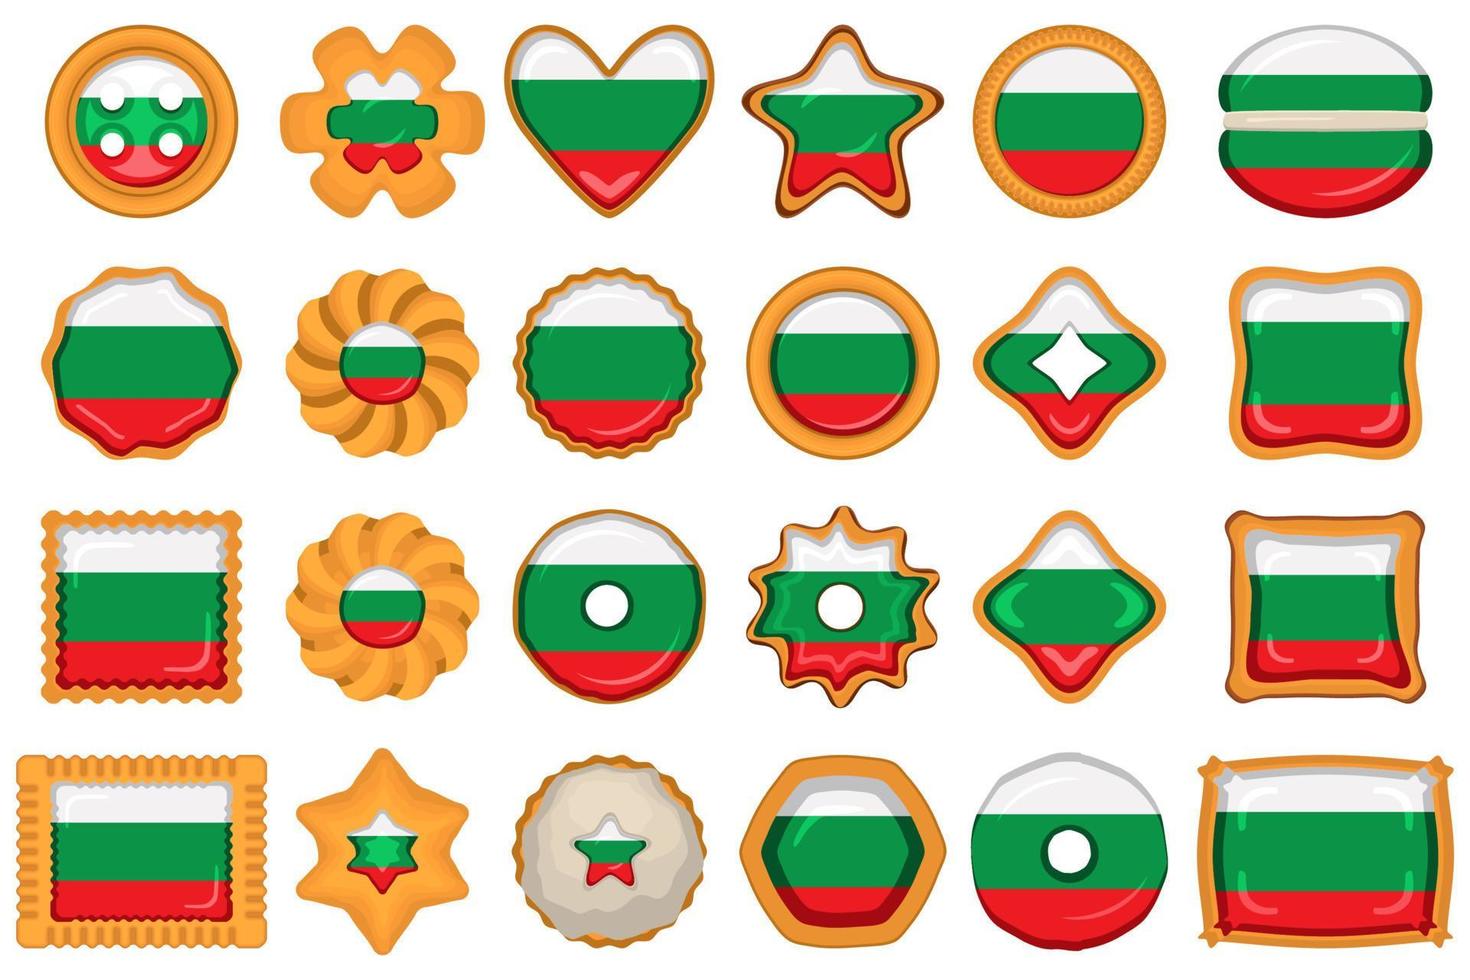 eigengemaakt koekje met vlag land bulgarije in smakelijk biscuit vector